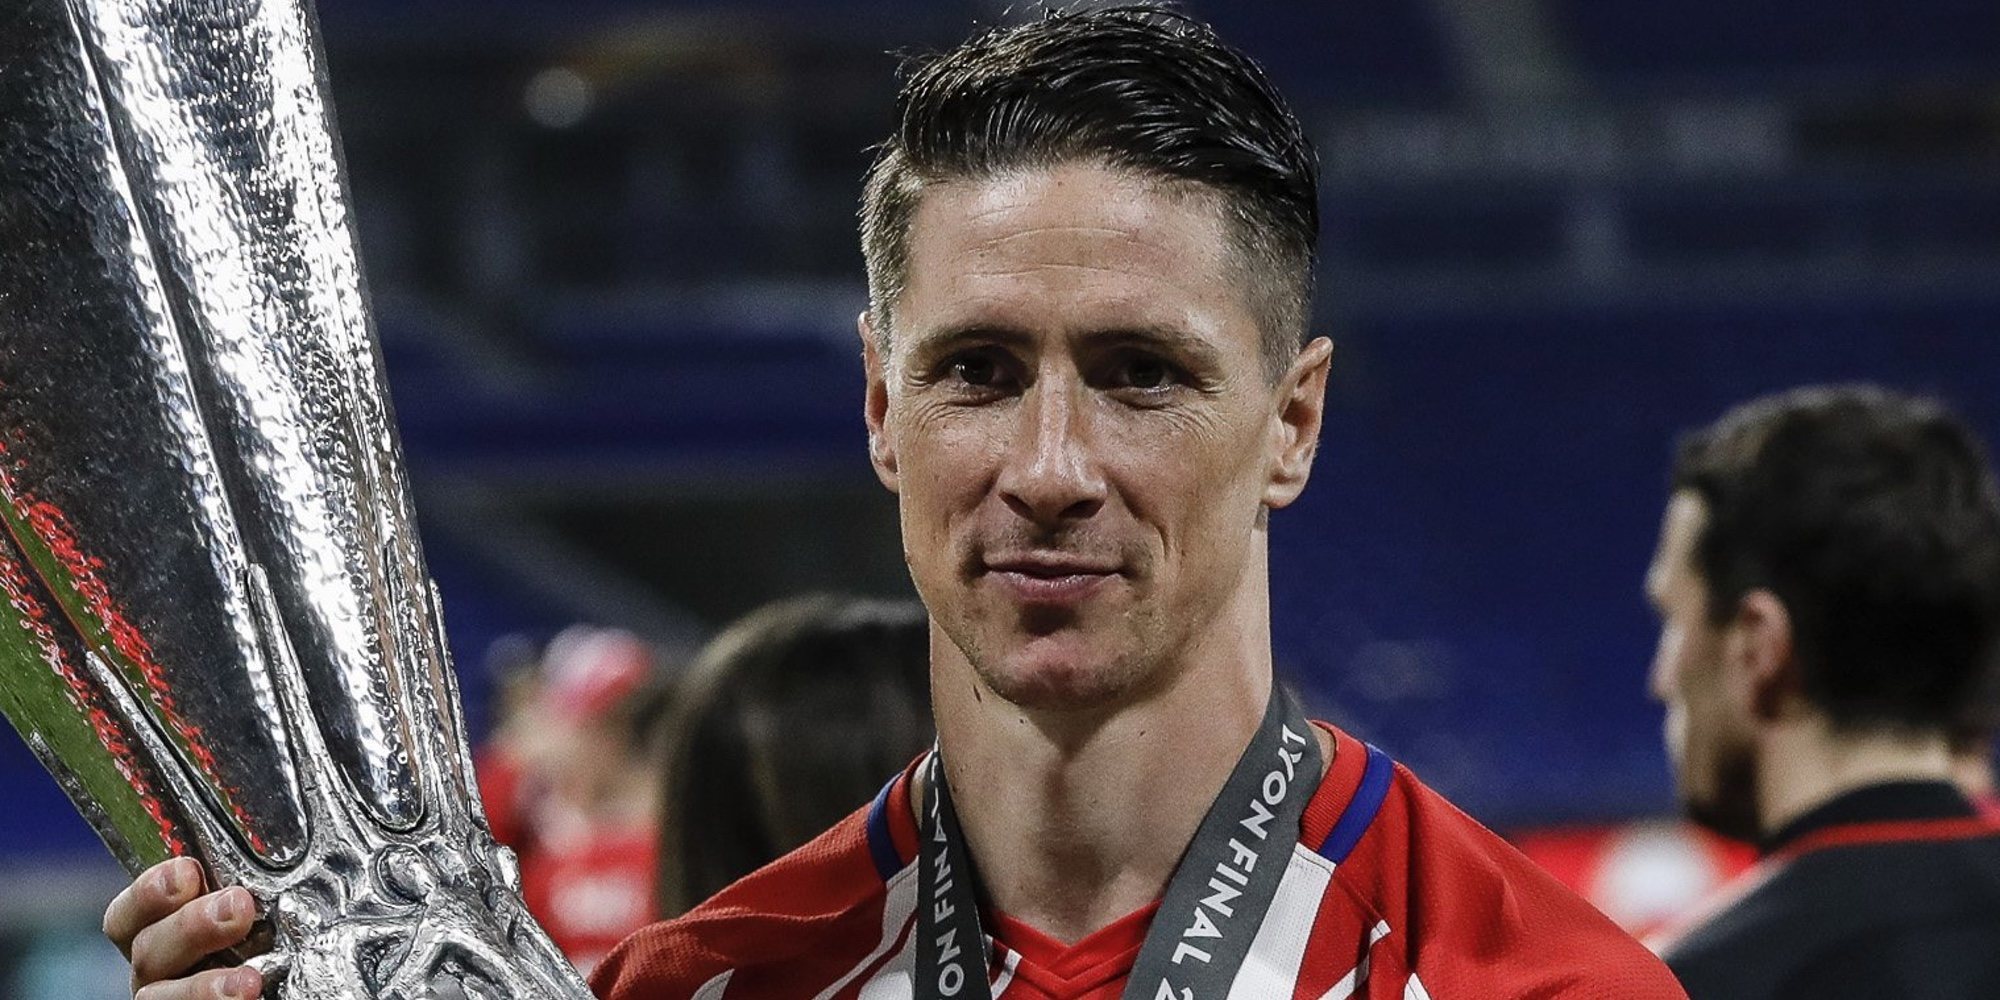 La rueda de prensa de Fernando Torres tras anunciar su retirada: "Ya no estaba disfrutando tanto como antes"